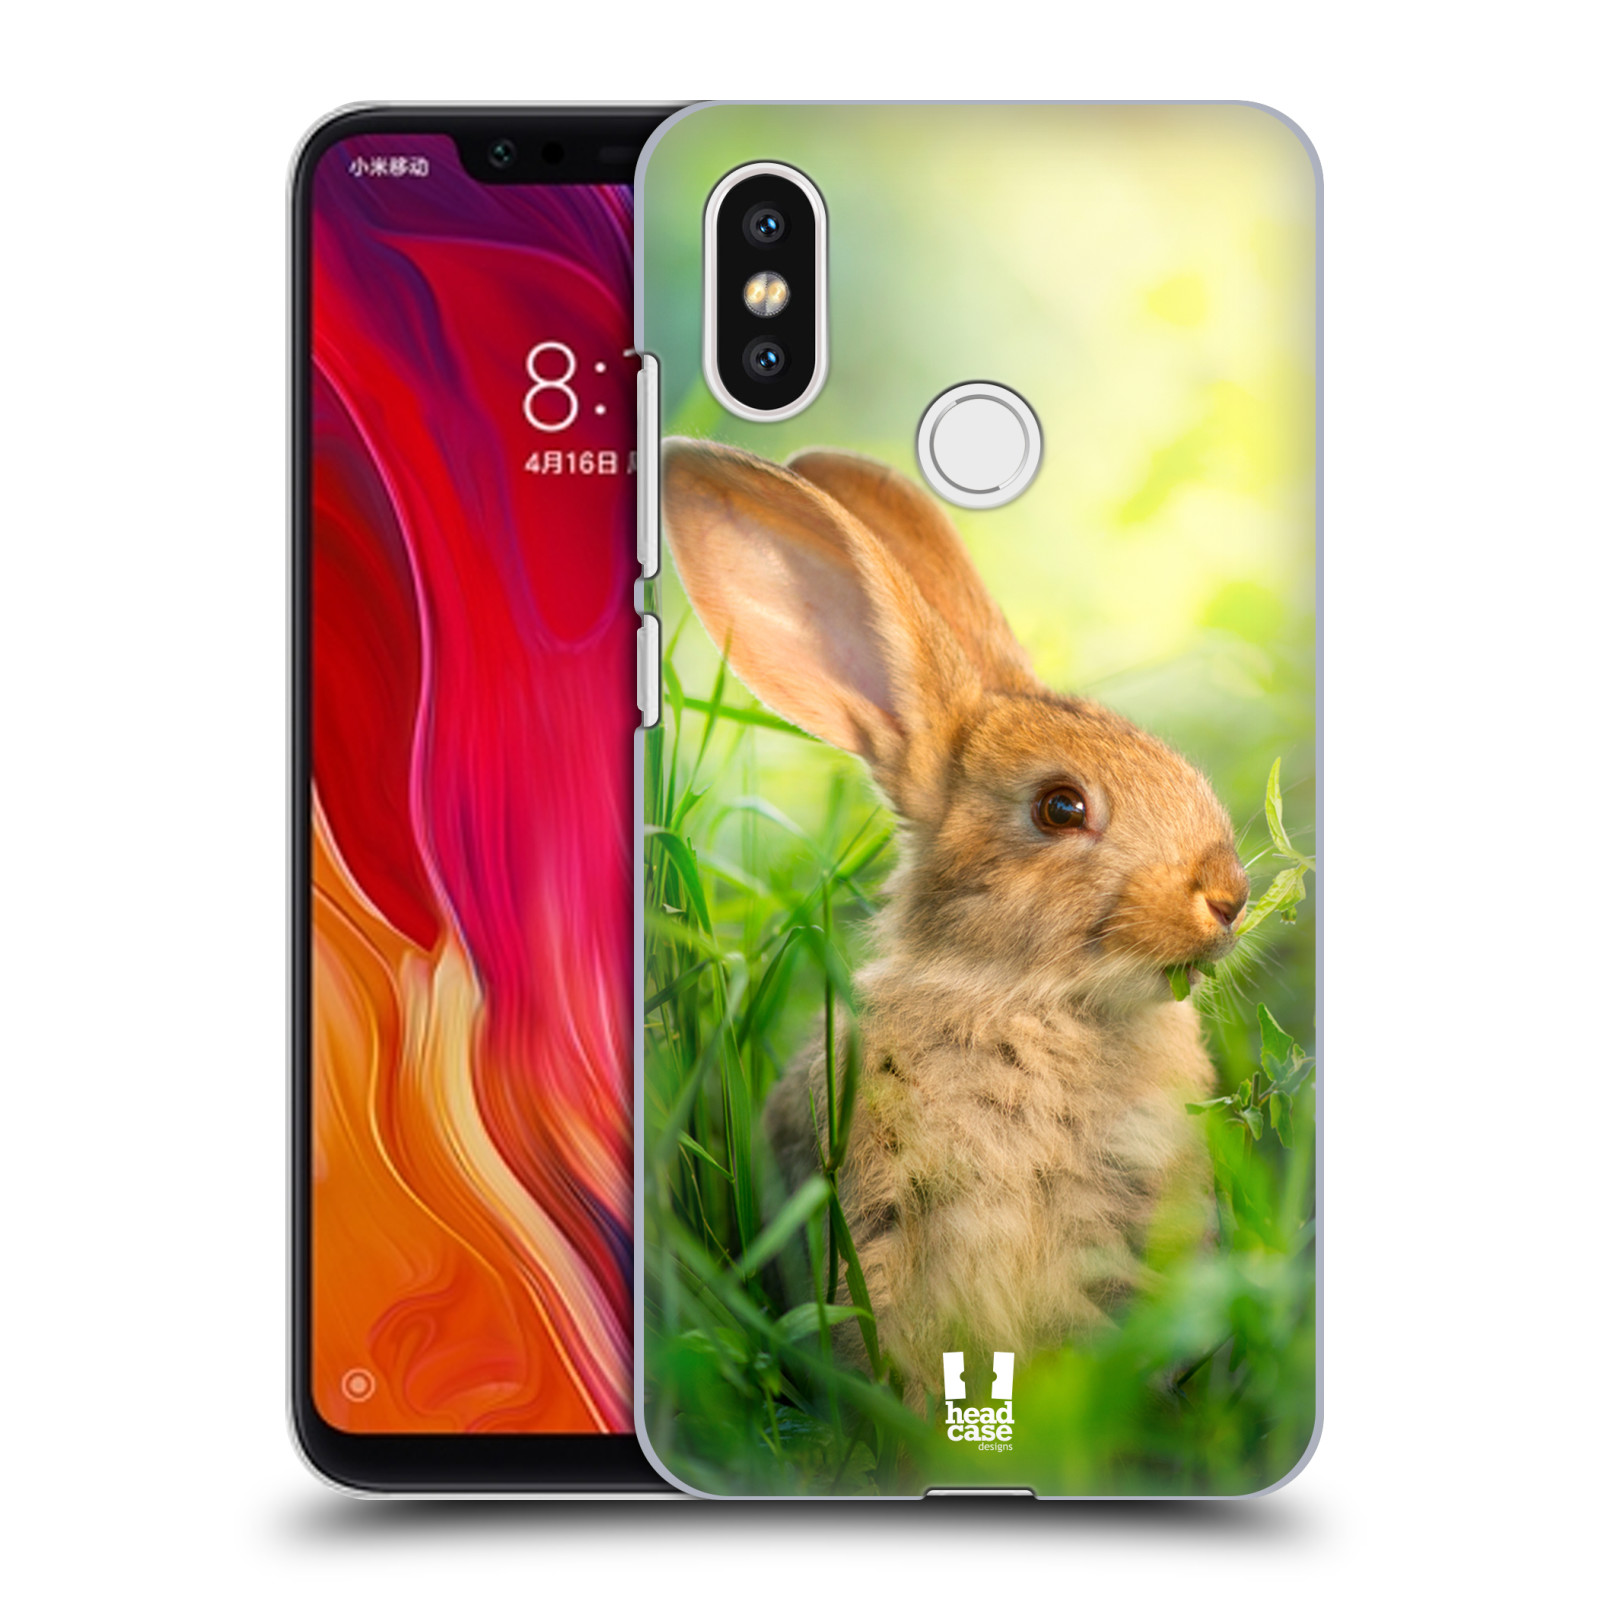 HEAD CASE plastový obal na mobil Xiaomi Mi 8 vzor Divočina, Divoký život a zvířata foto ZAJÍČEK V TRÁVĚ ZELENÁ